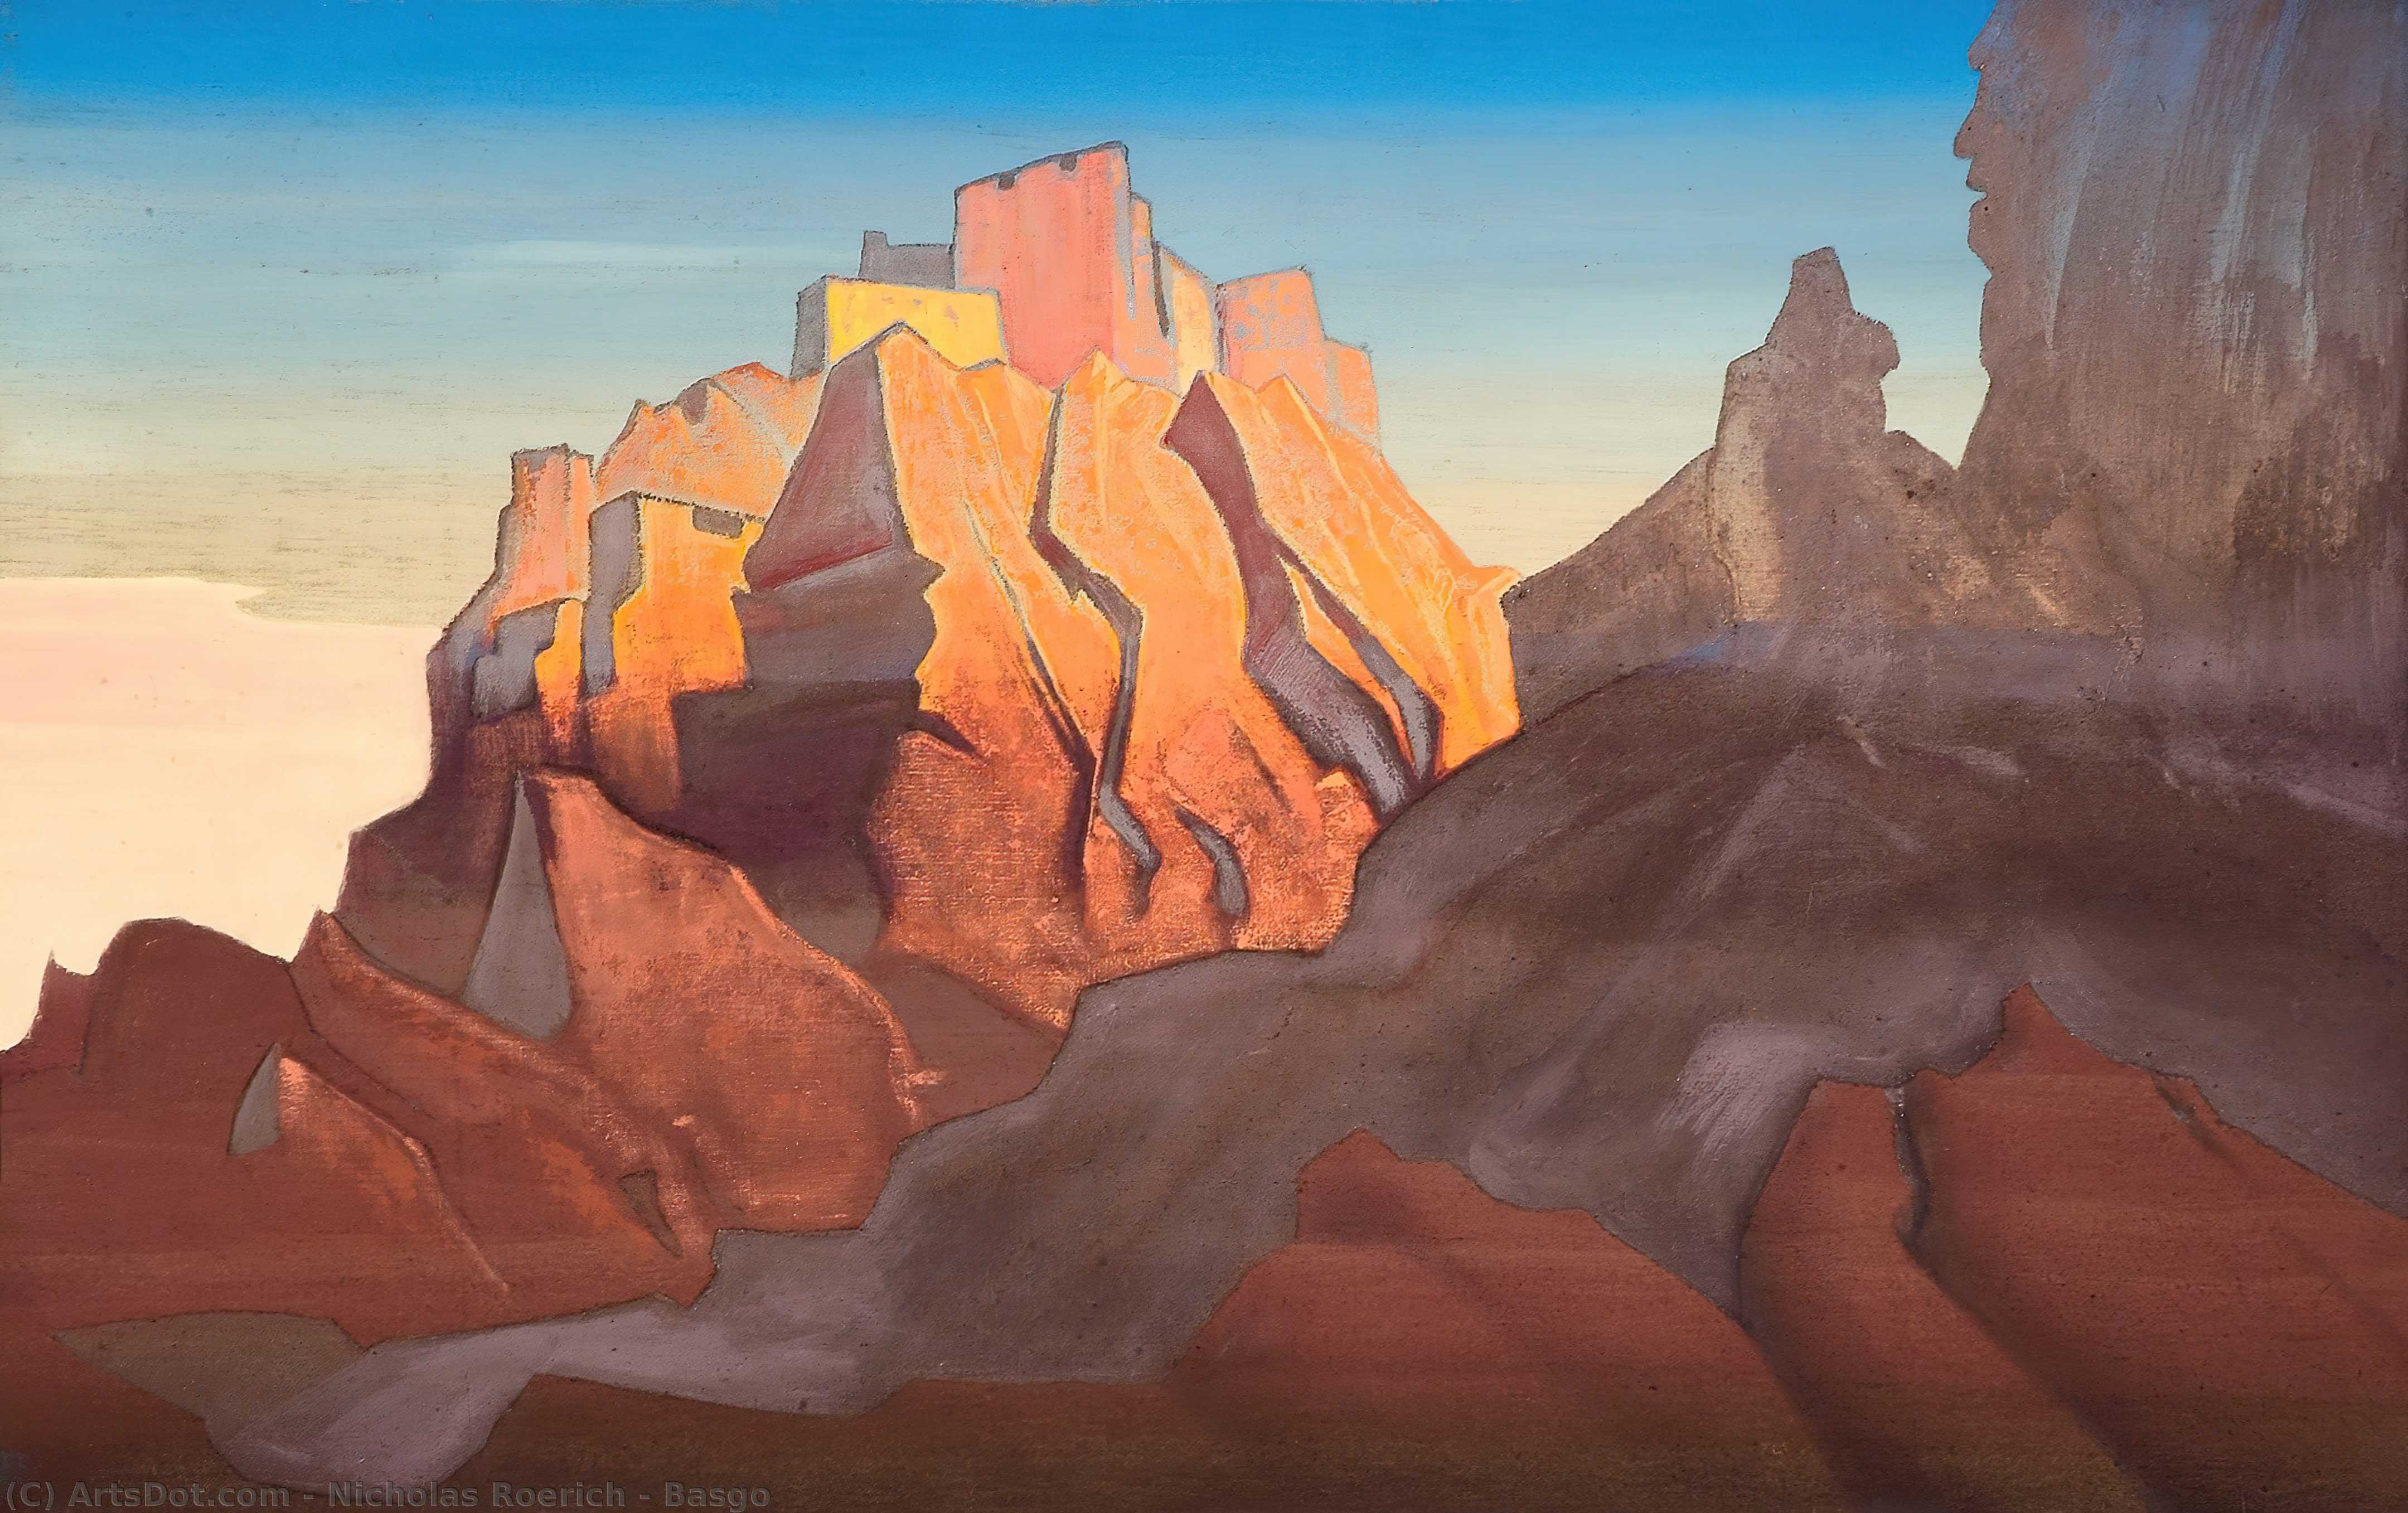 WikiOO.org - Enciclopédia das Belas Artes - Pintura, Arte por Nicholas Roerich - Basgo